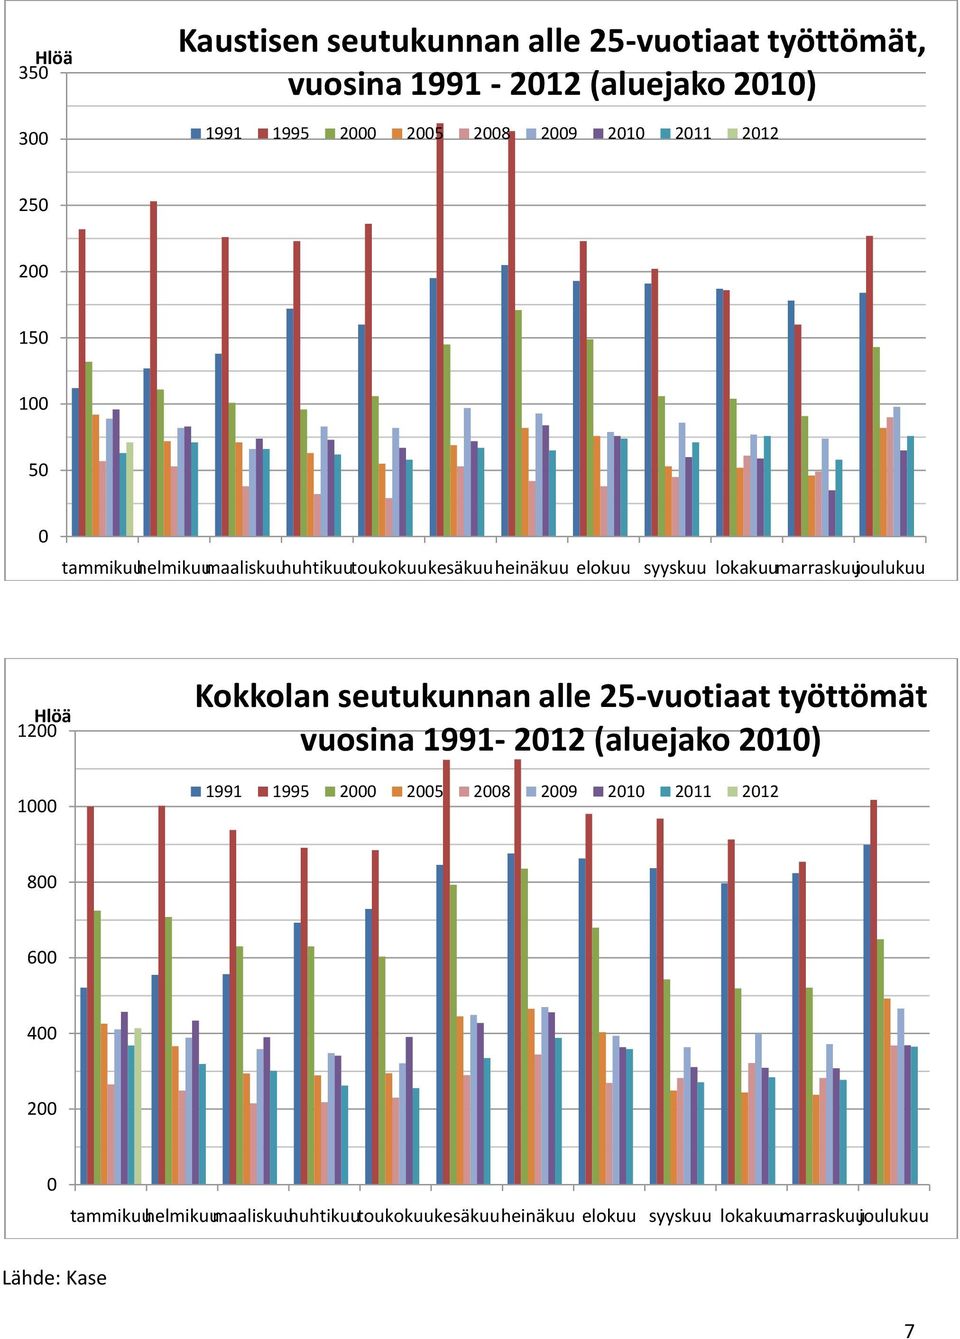 1200 1000 Kokkolan seutukunnan alle 25-vuotiaat työttömät vuosina 1991-2012 (aluejako 2010) 1991 1995 2000 2005 2008 2009 2010 2011